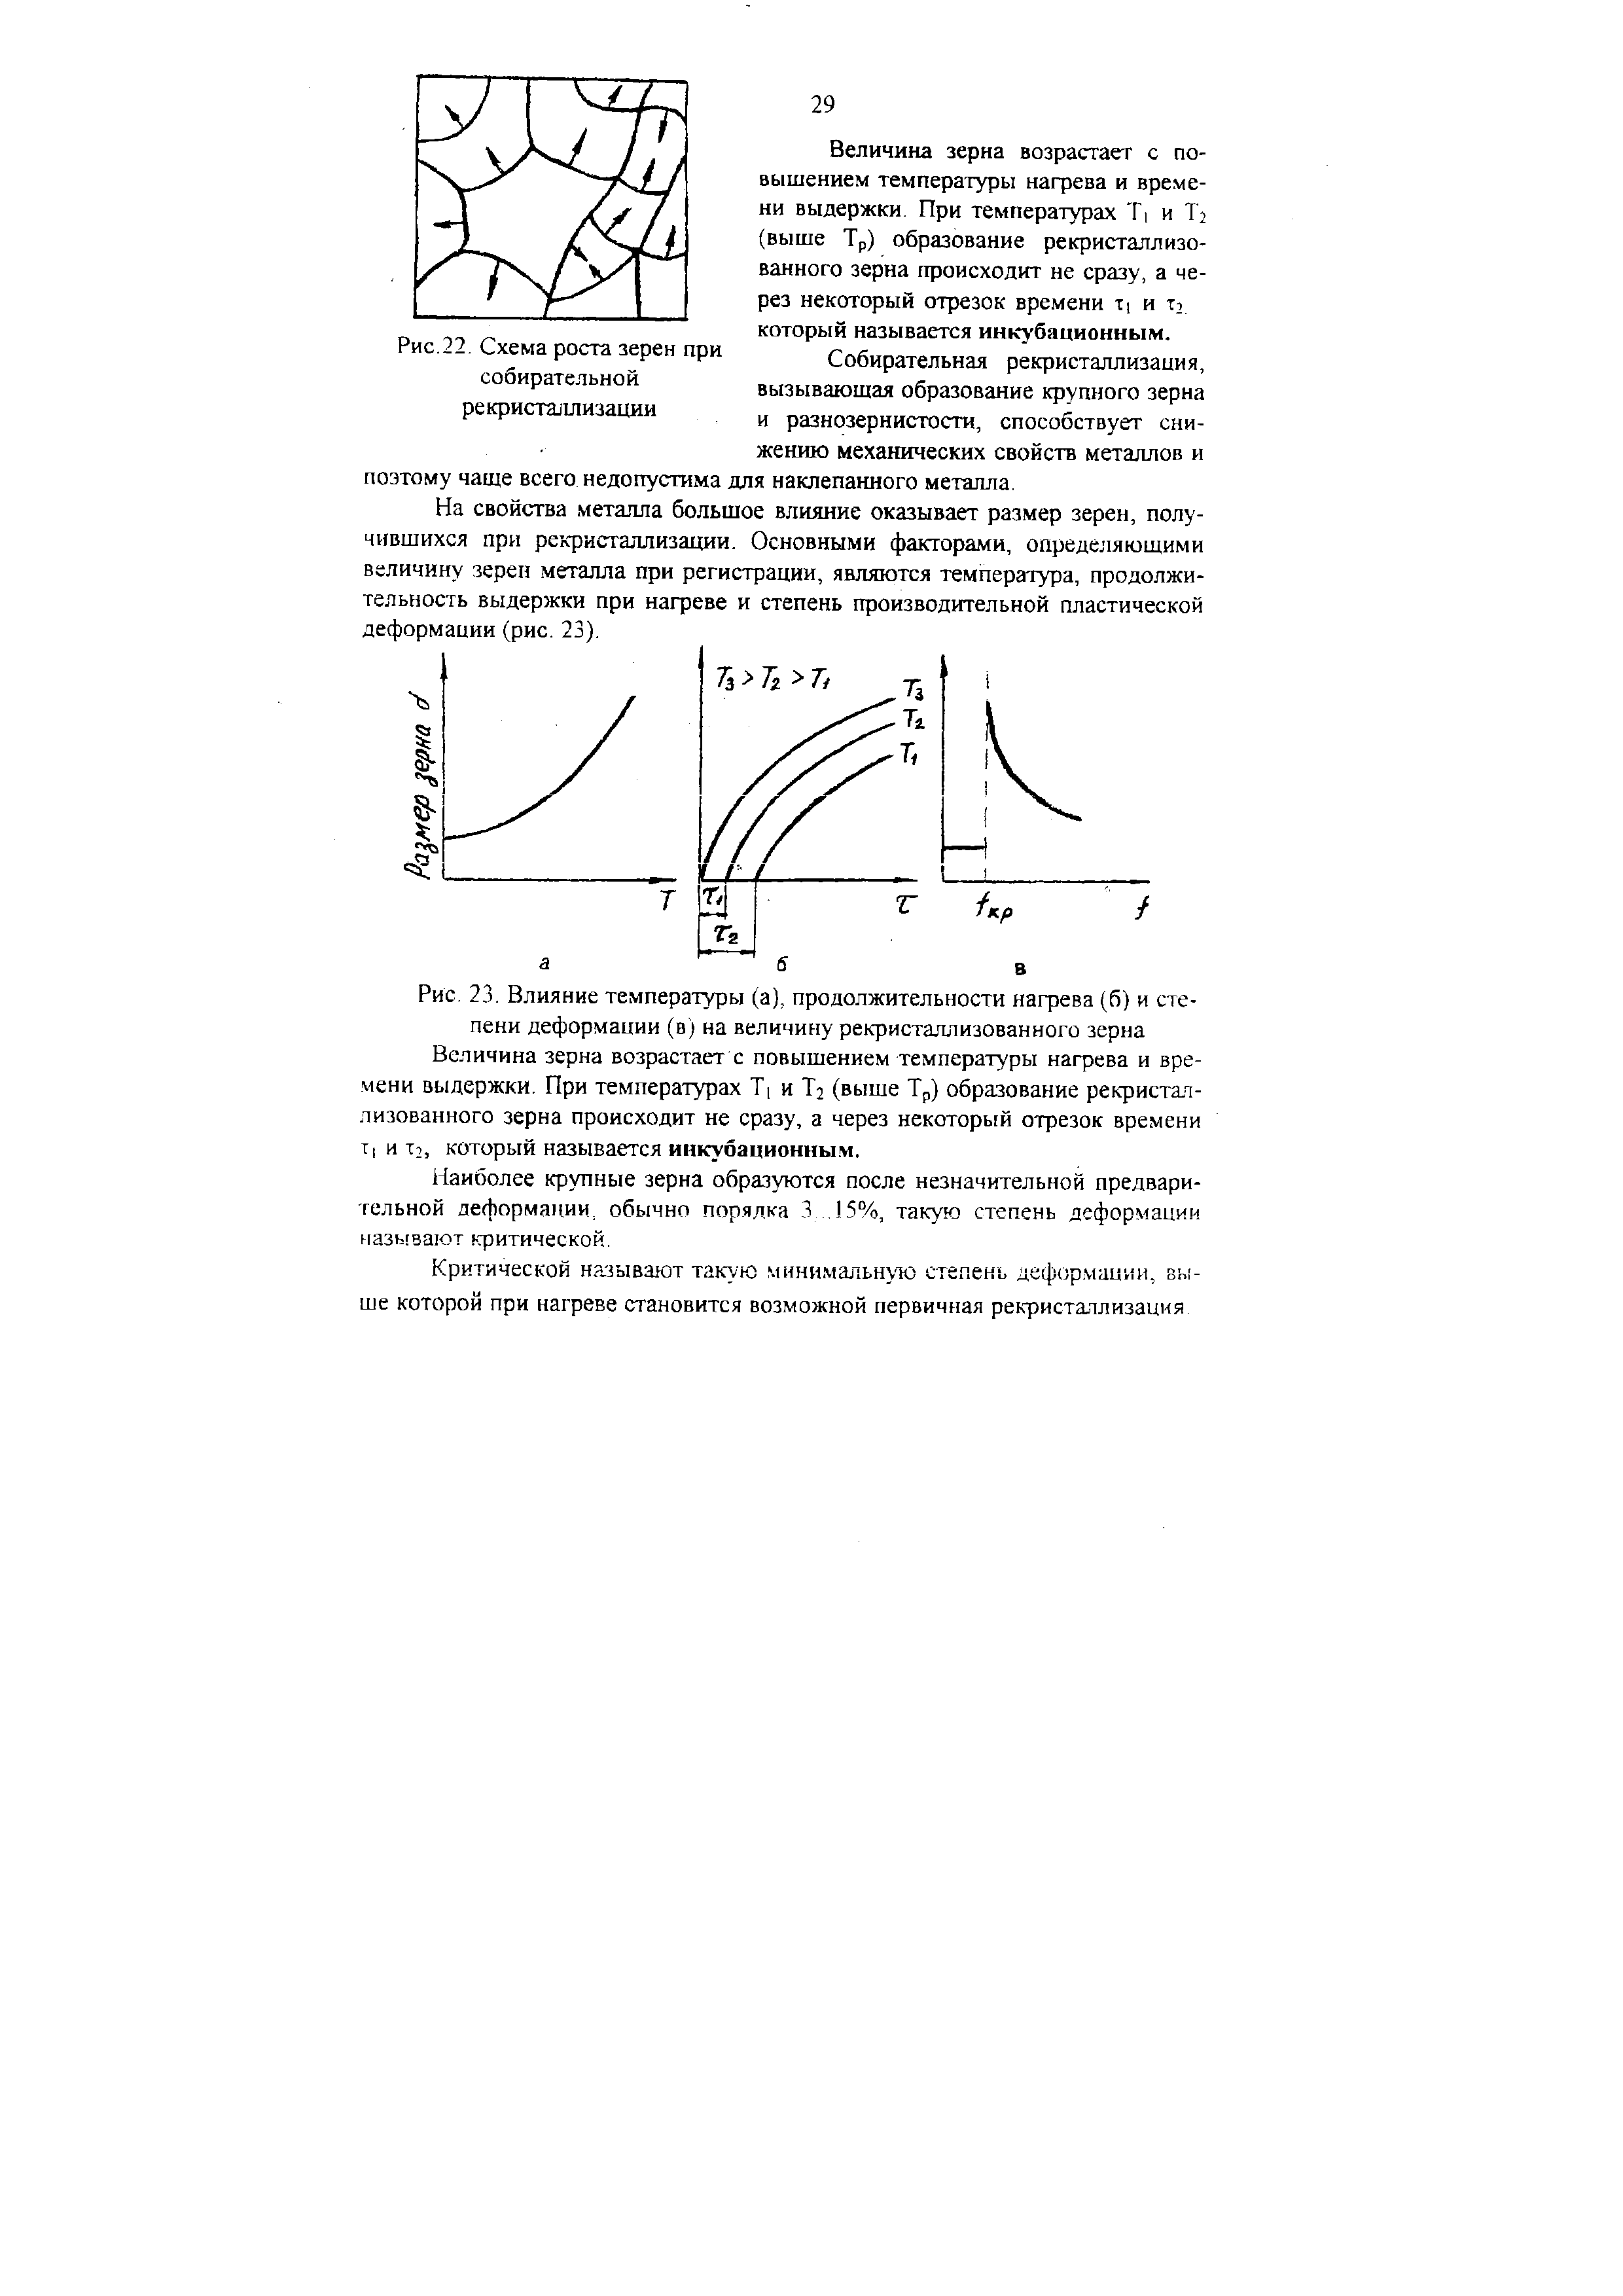 Рис. 23. Влияние температуры (а), продолжительности нагрева (б) и степени деформации (в) на величину рекристаллизованного зерна
